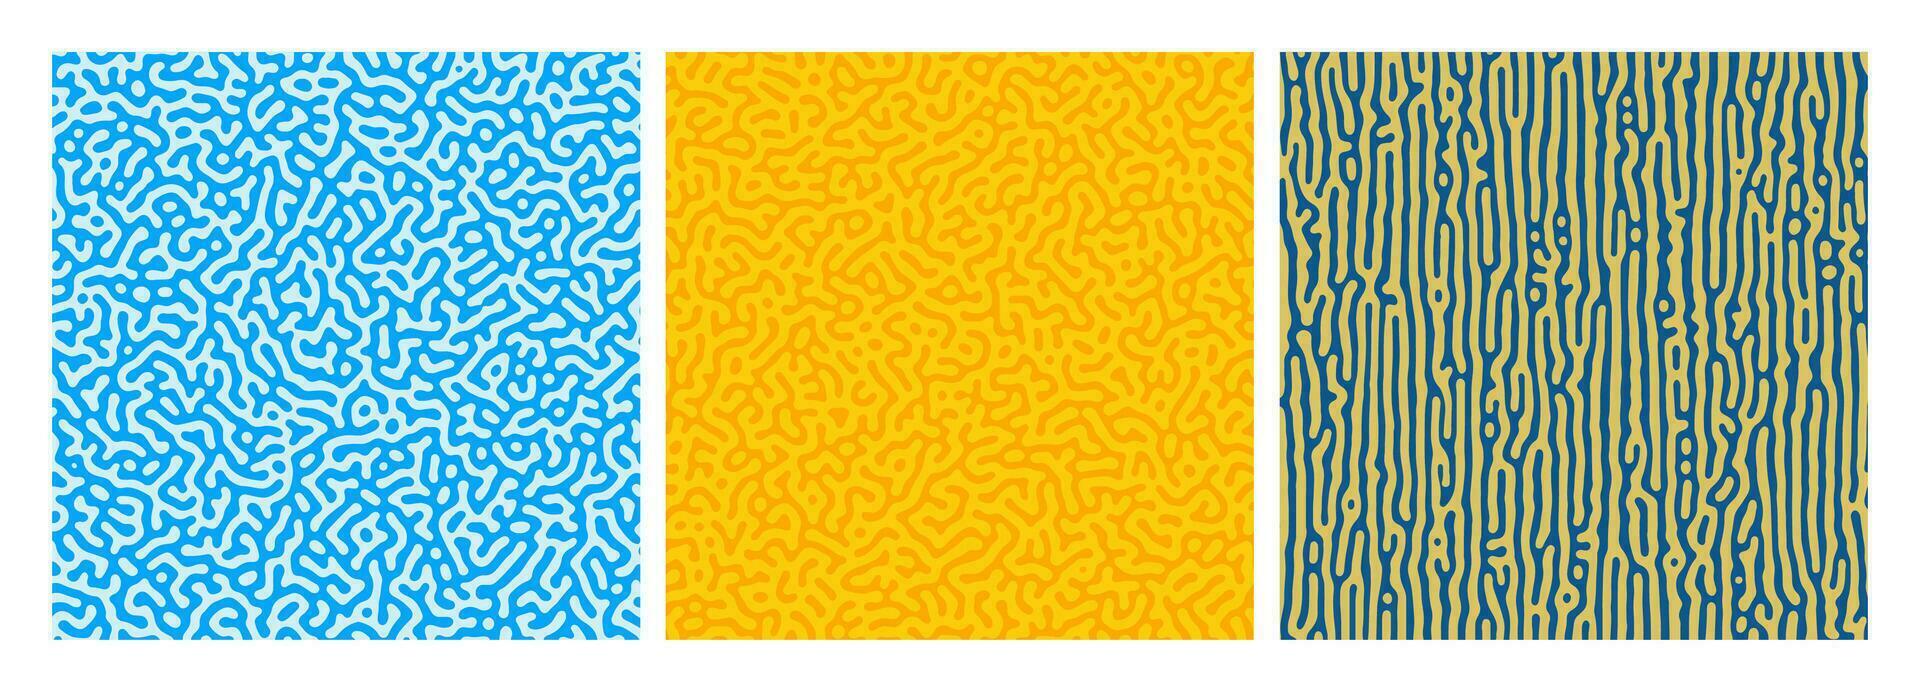 ensemble de Trois coloré turing réaction pente arrière-plans. abstrait la diffusion modèle avec chaotique formes. vecteur illustration.